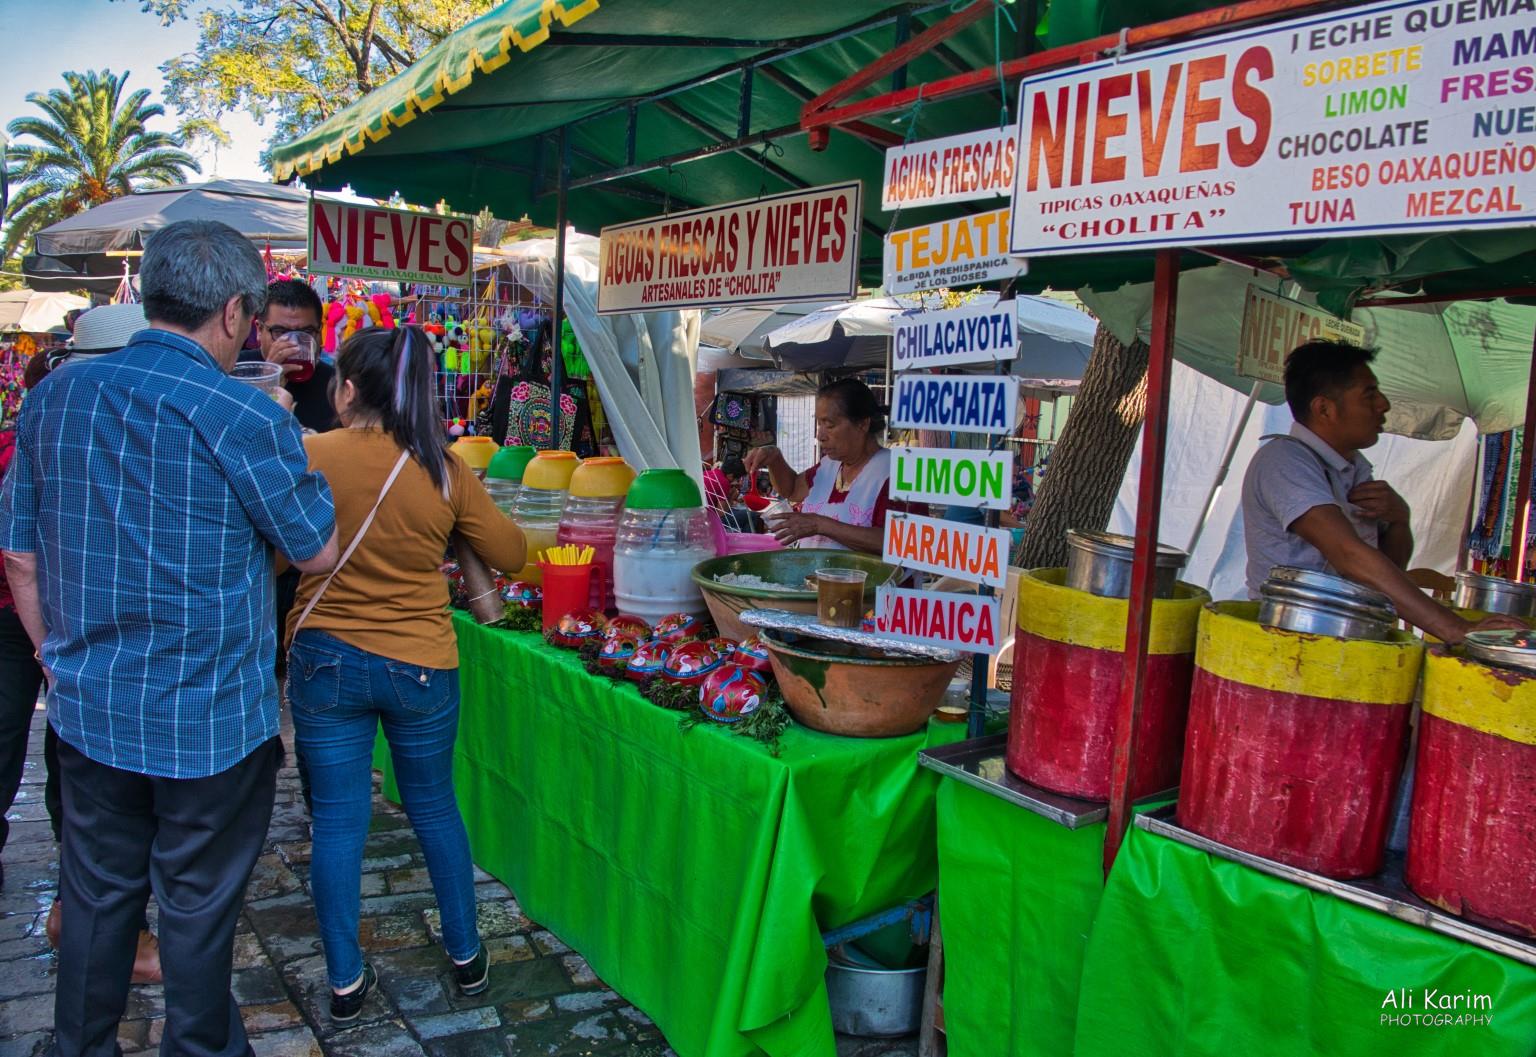 Oaxaca, Mexico Local refreshments